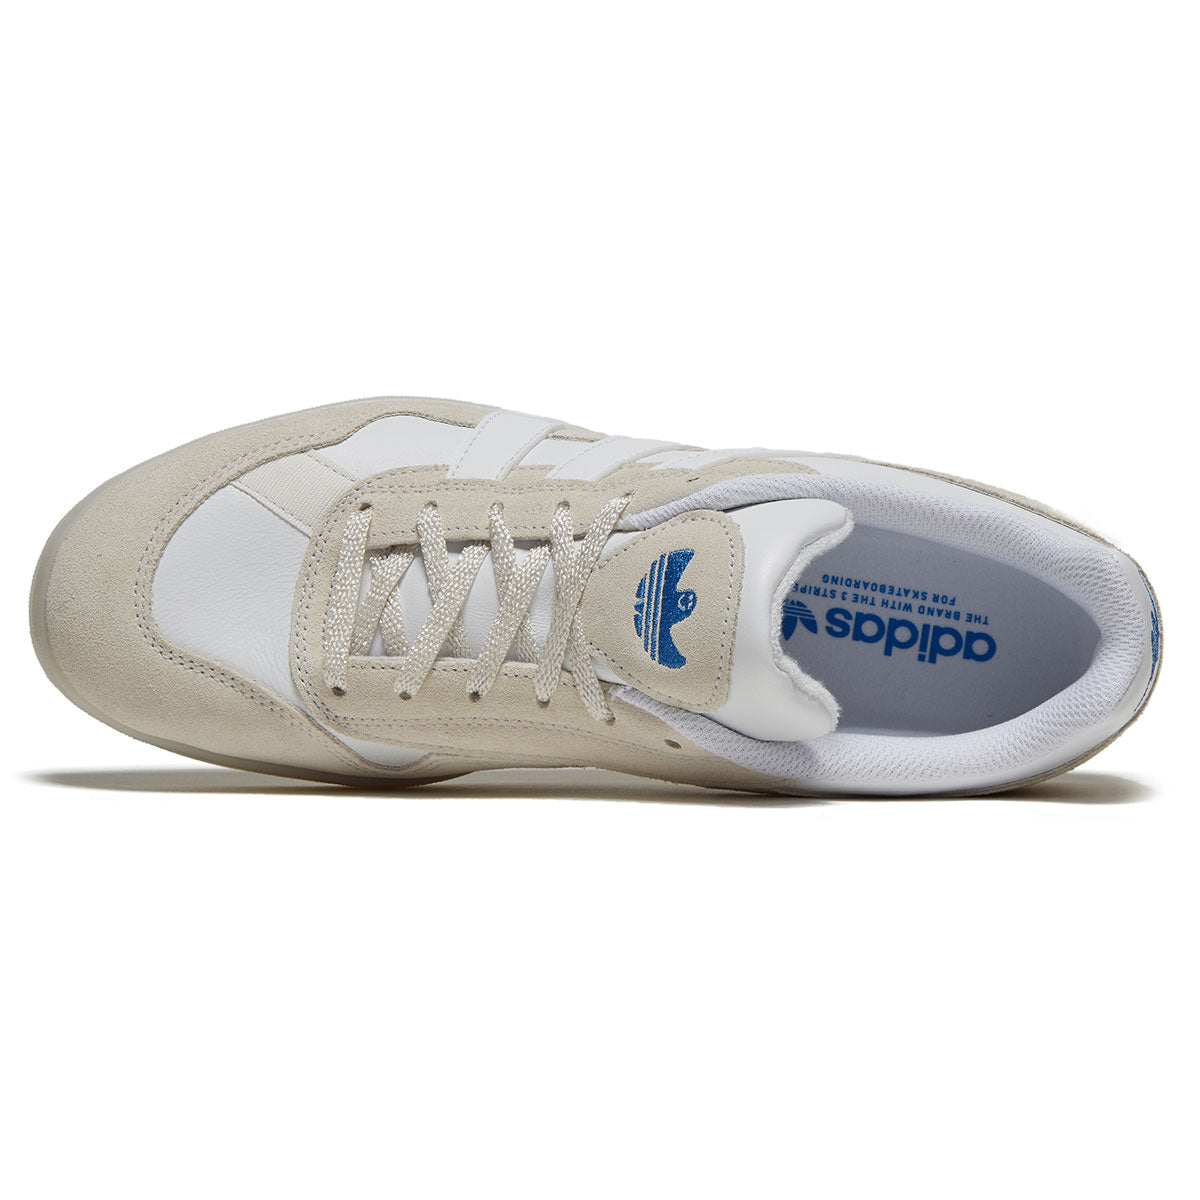 Adidas Aloha Super Shoes - Crystal White/White/Bluebird image 3